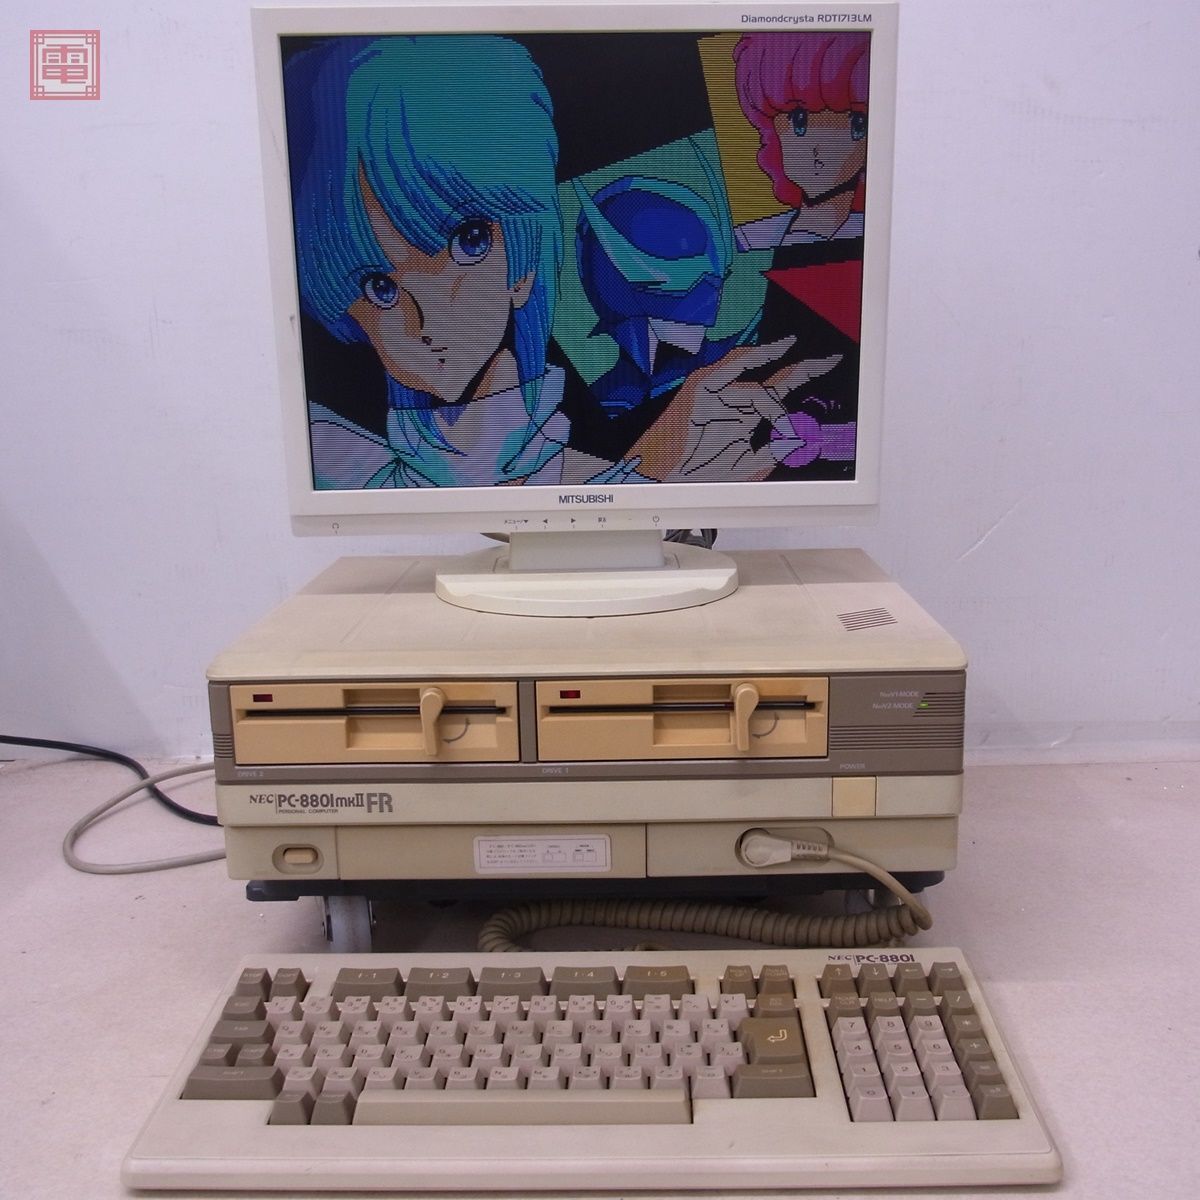  рабочий товар NEC PC-8801MKIIFR корпус клавиатура * в подарок soft есть mkIIFR Япония электрический с дефектом [40